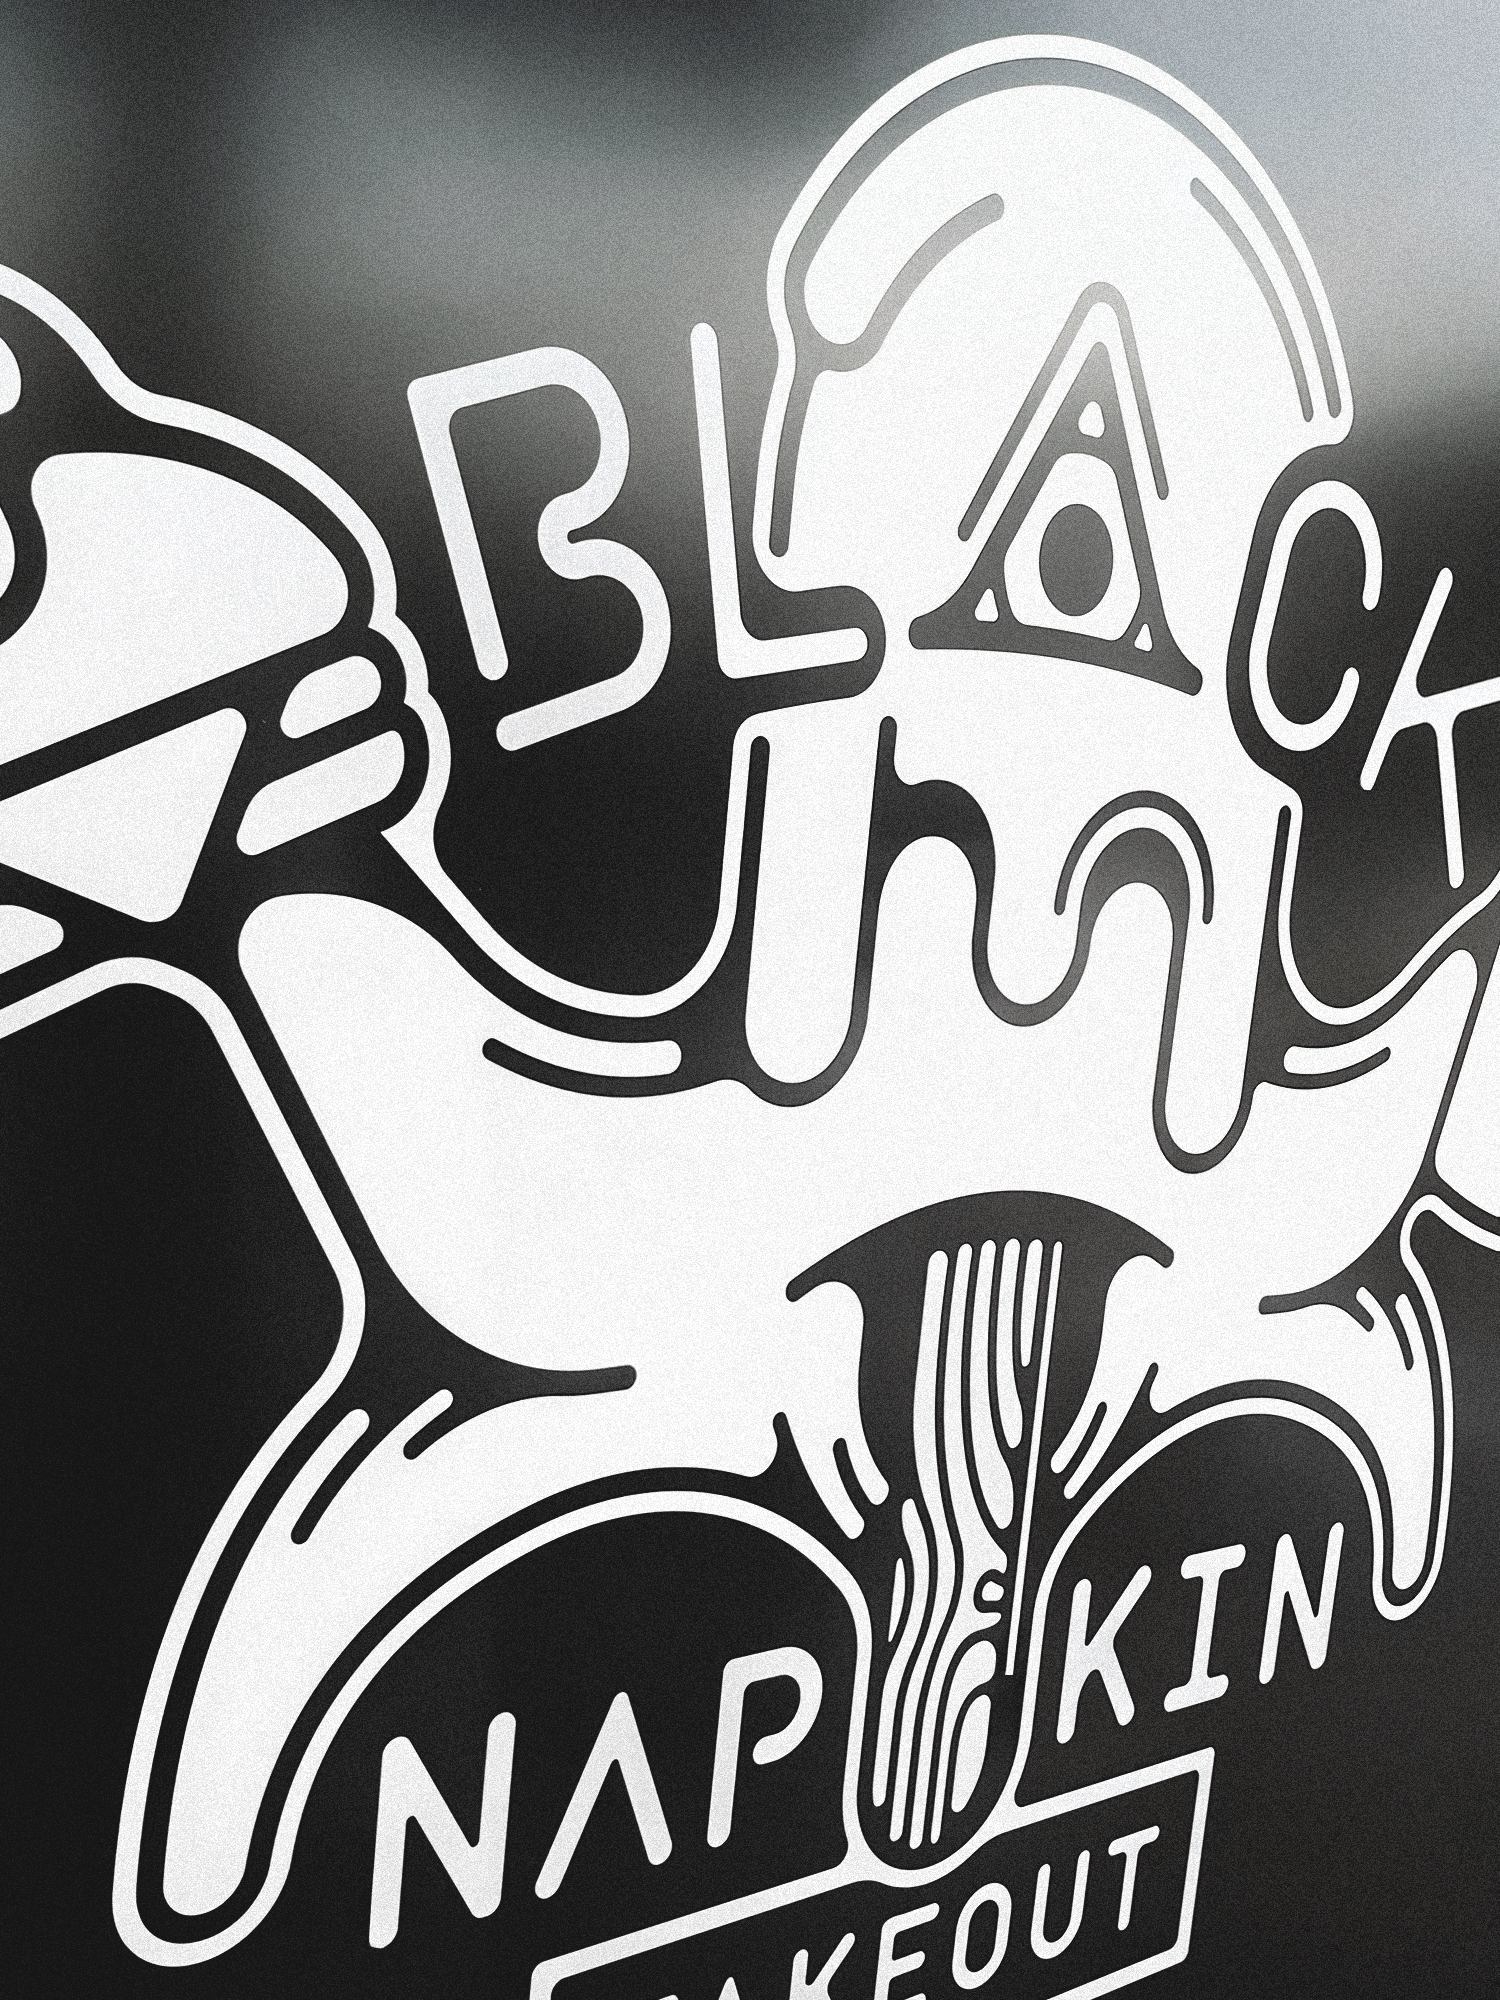 Black Napkin Takeout